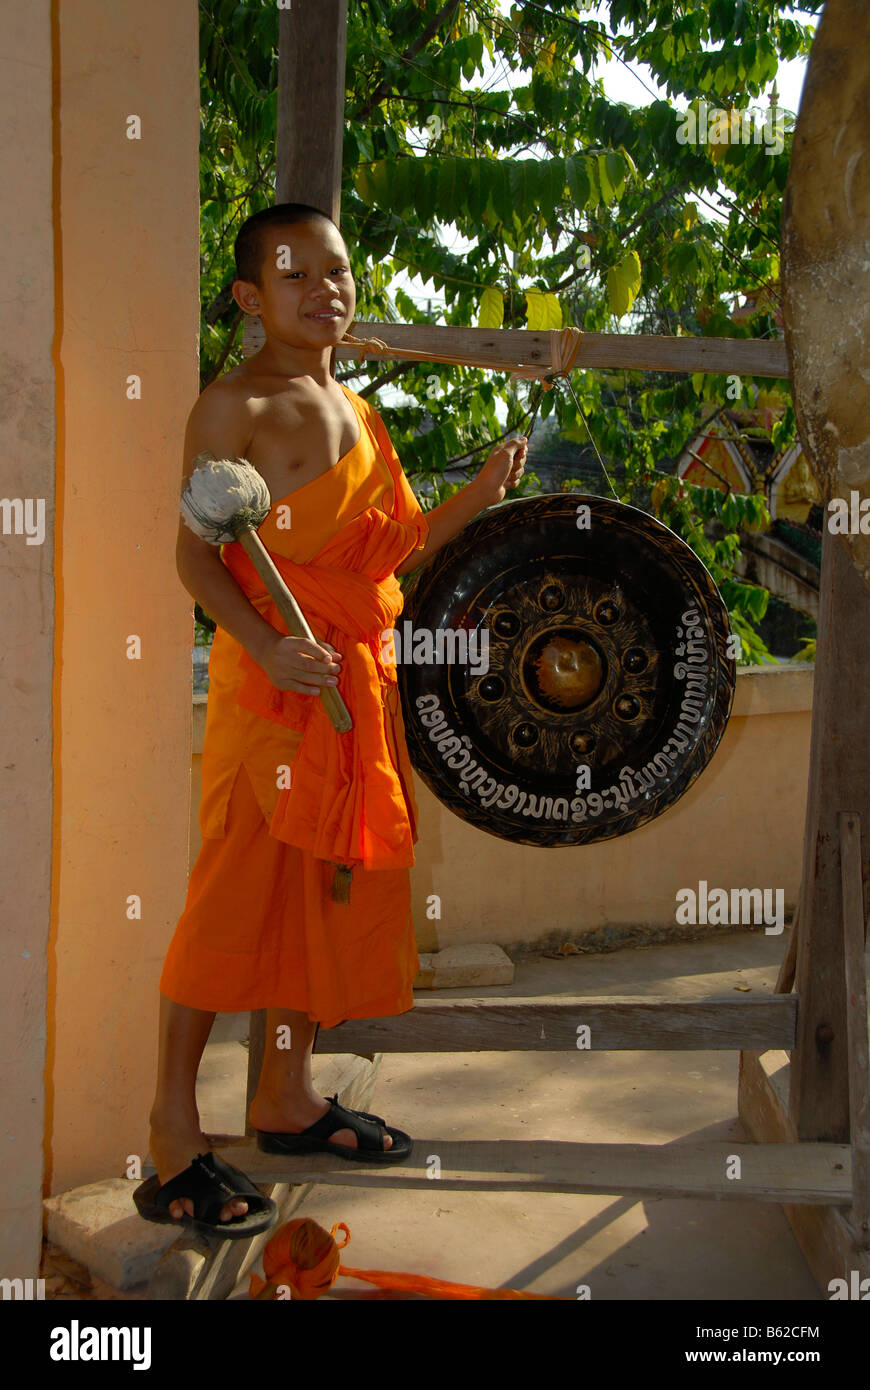 Buddhistischer Novize trägt einen orangefarbenen Gewand einen Gong schlagen, Wat Phonxay, Vientiane, Laos, Südostasien Stockfoto